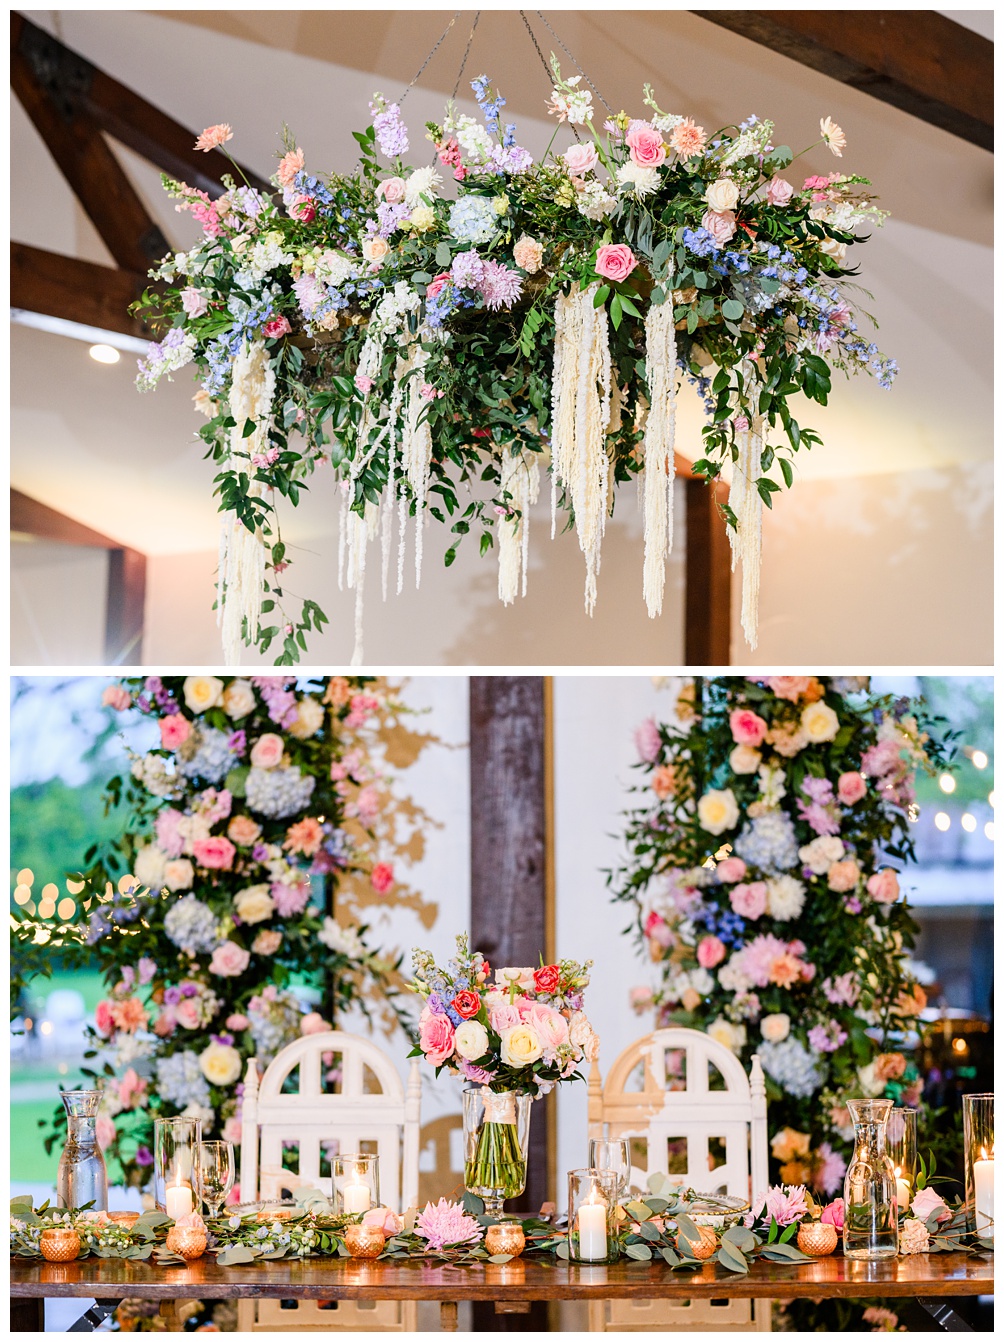 Flower chandelier at wedding reception